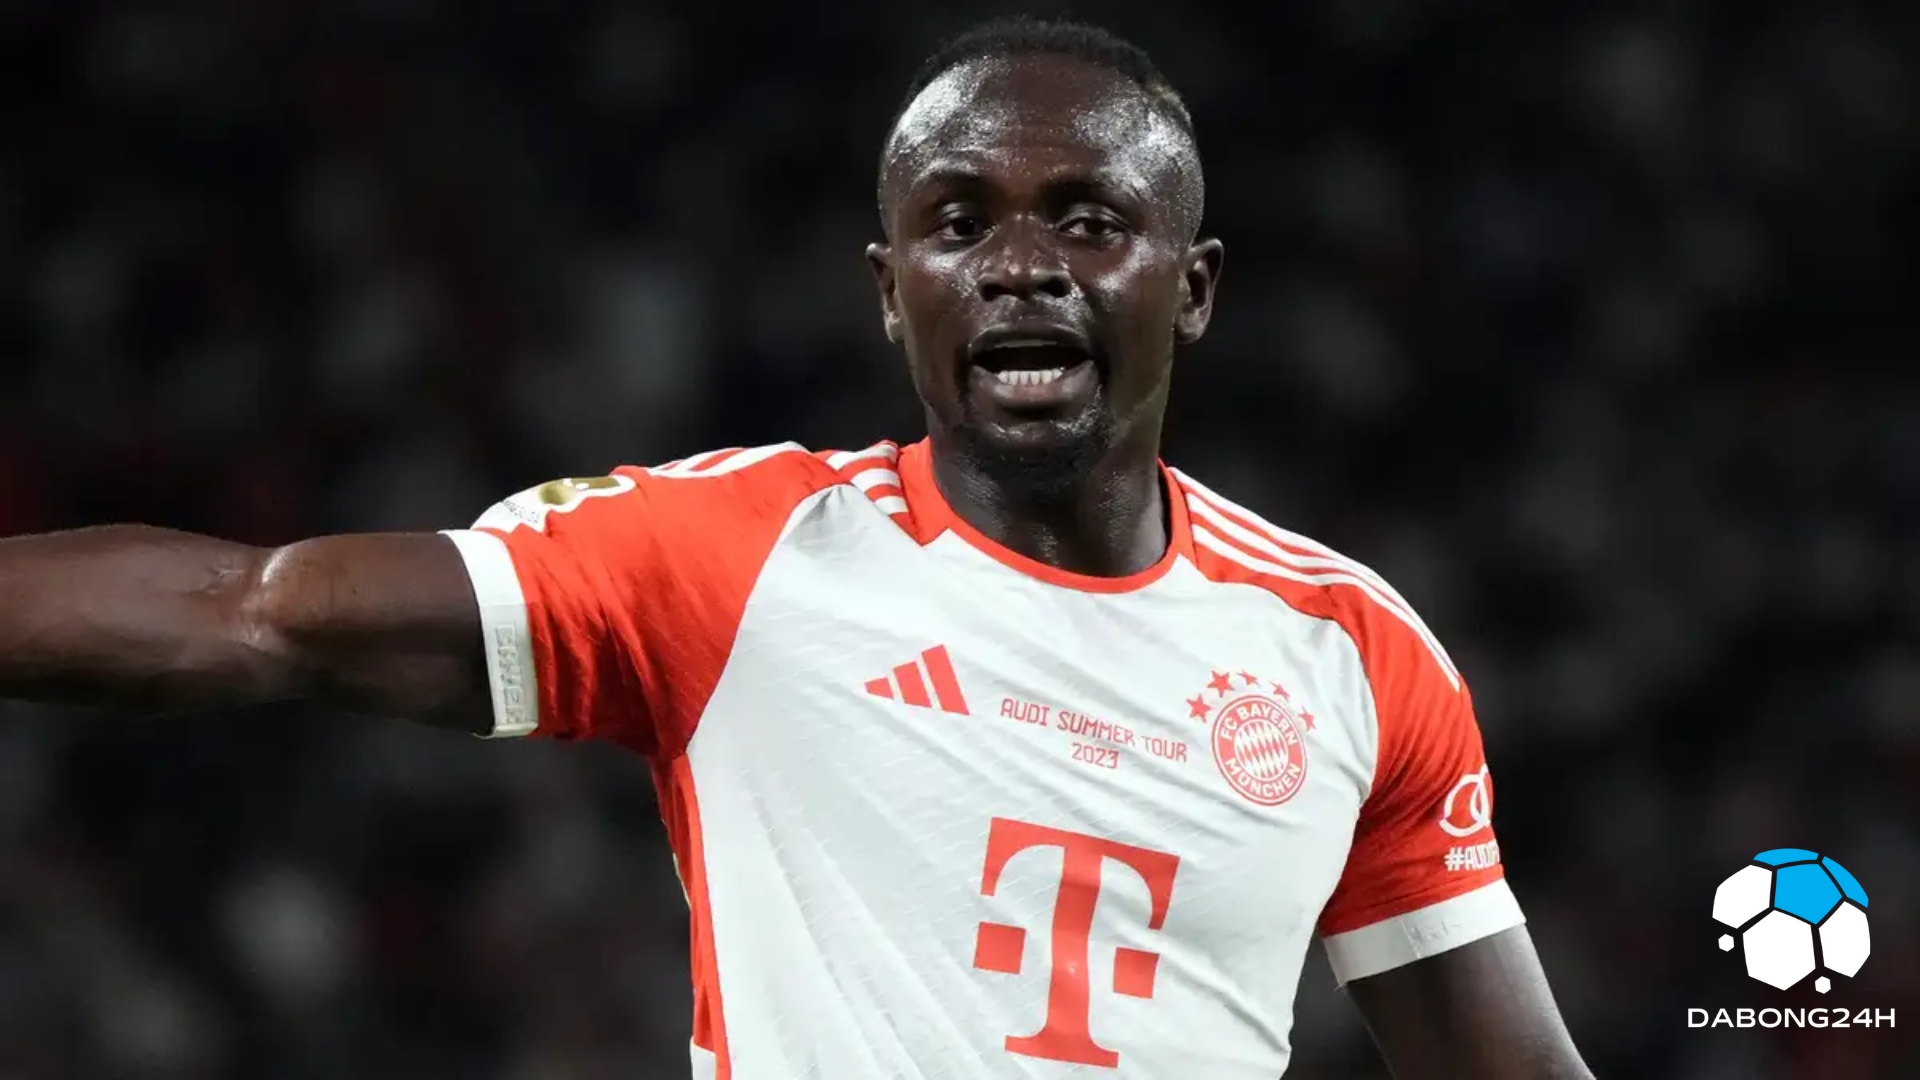 'Rời Bayern Munich khiến tôi đau lòng' - Sadio Mane hối tiếc việc chuyển đi khi gia nhập Al-Nassr - 2